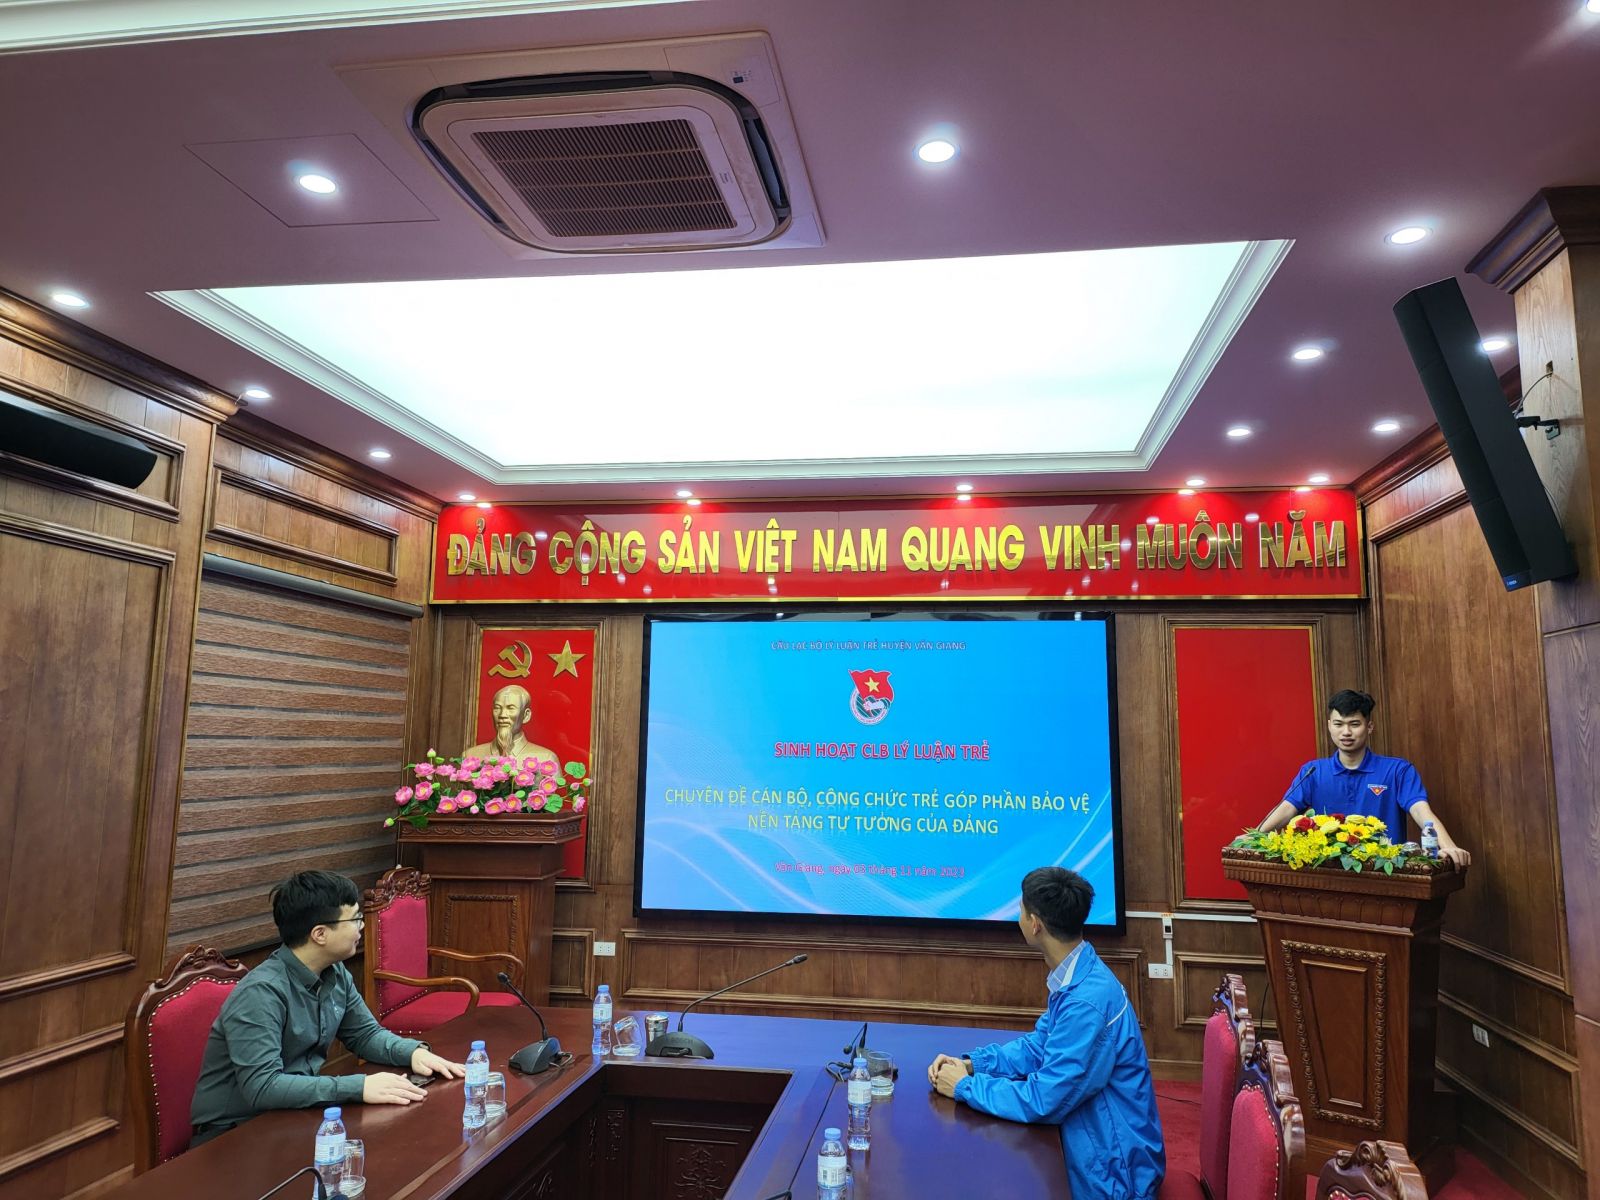 Câu lạc bộ Lý luận trẻ huyện Văn Giang sinh hoạt chuyên đề "Cán bộ, công chức trẻ góp phần bảo vệ nền tảng tư tưởng của Đảng"